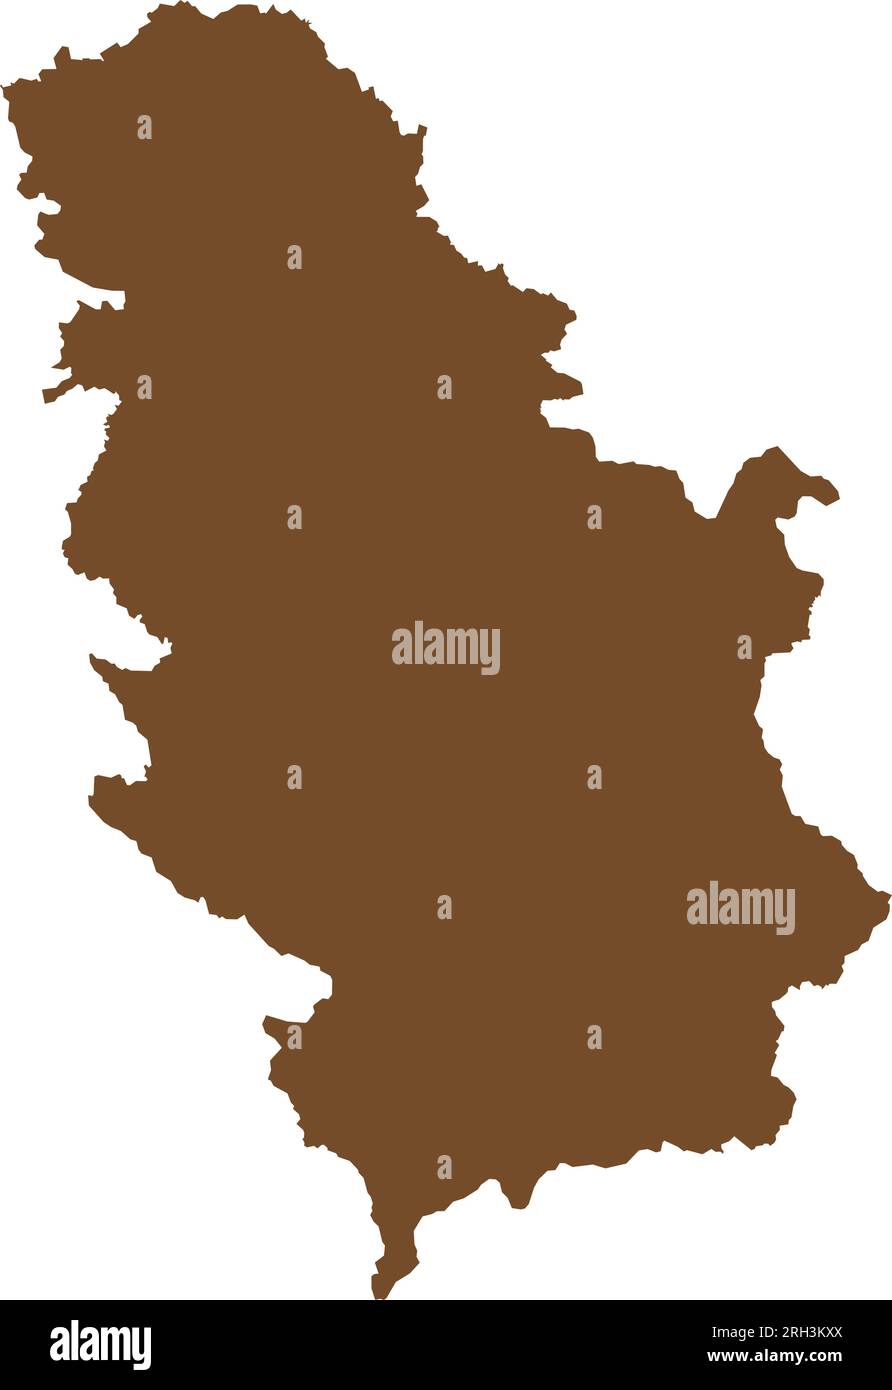 Mappa colore MARRONE CMYK della SERBIA (con KOSOVO) Illustrazione Vettoriale